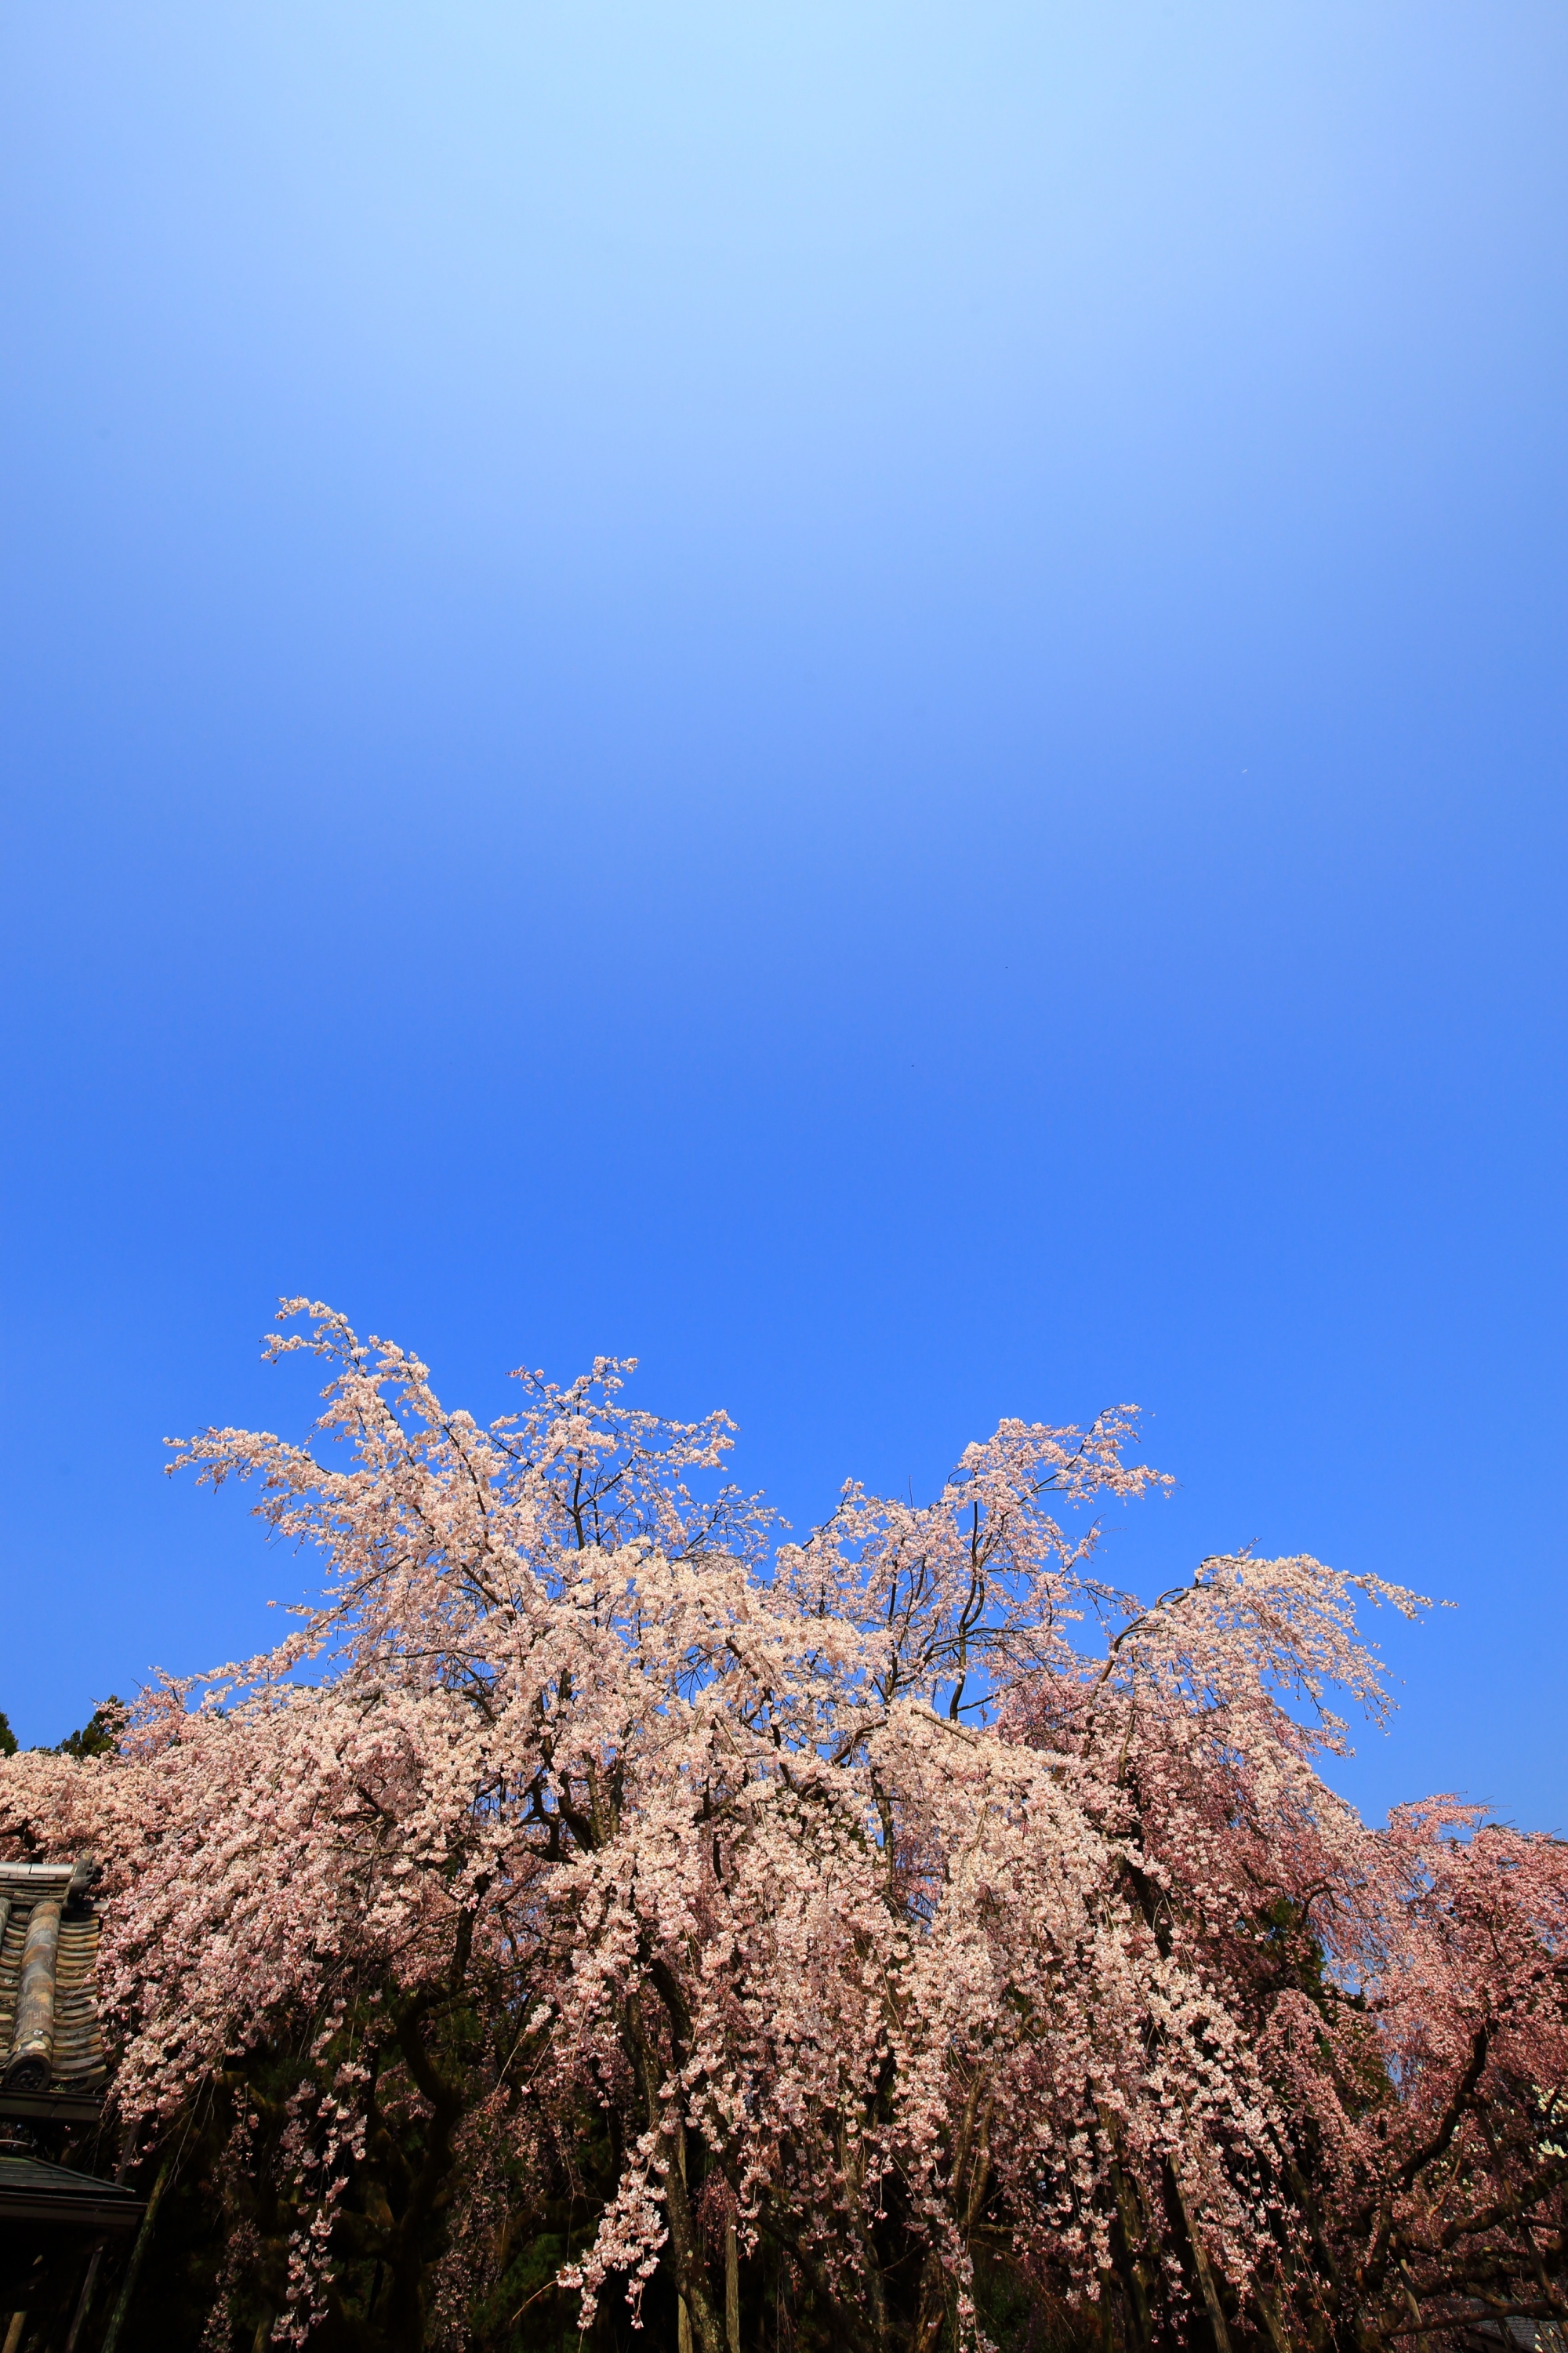 最高の青空の下で弾けんばかりに咲く満開のしだれ桜